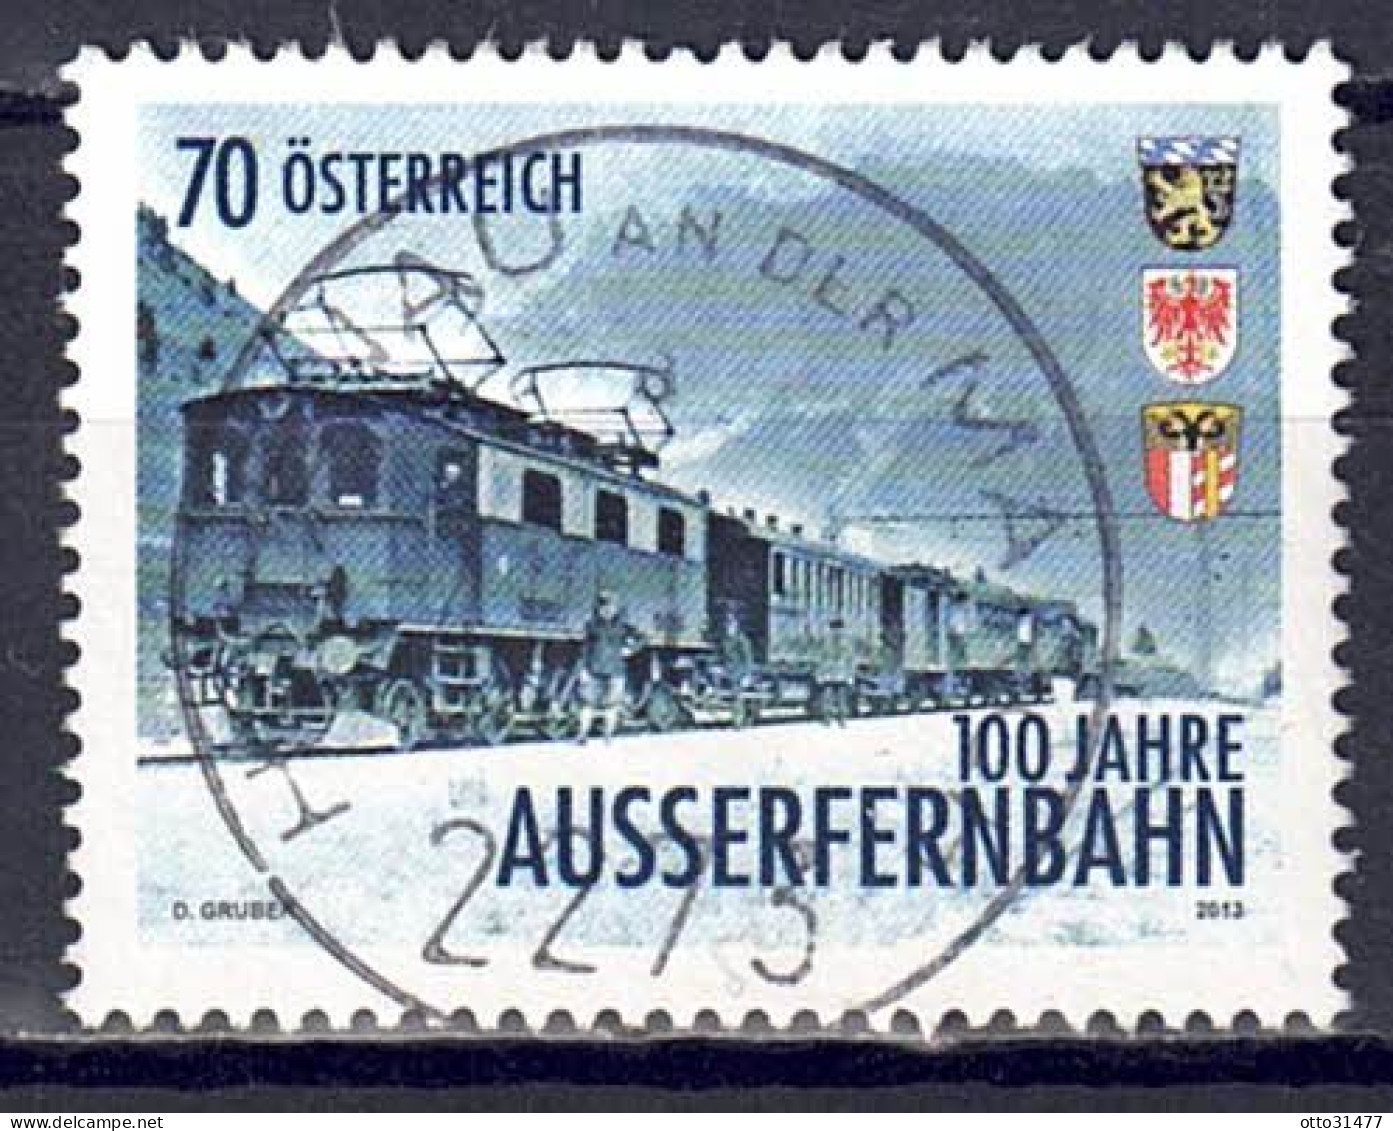 Österreich 2013 - Außerfernbahn, MiNr. 3086, Gestempelt / Used - Usati